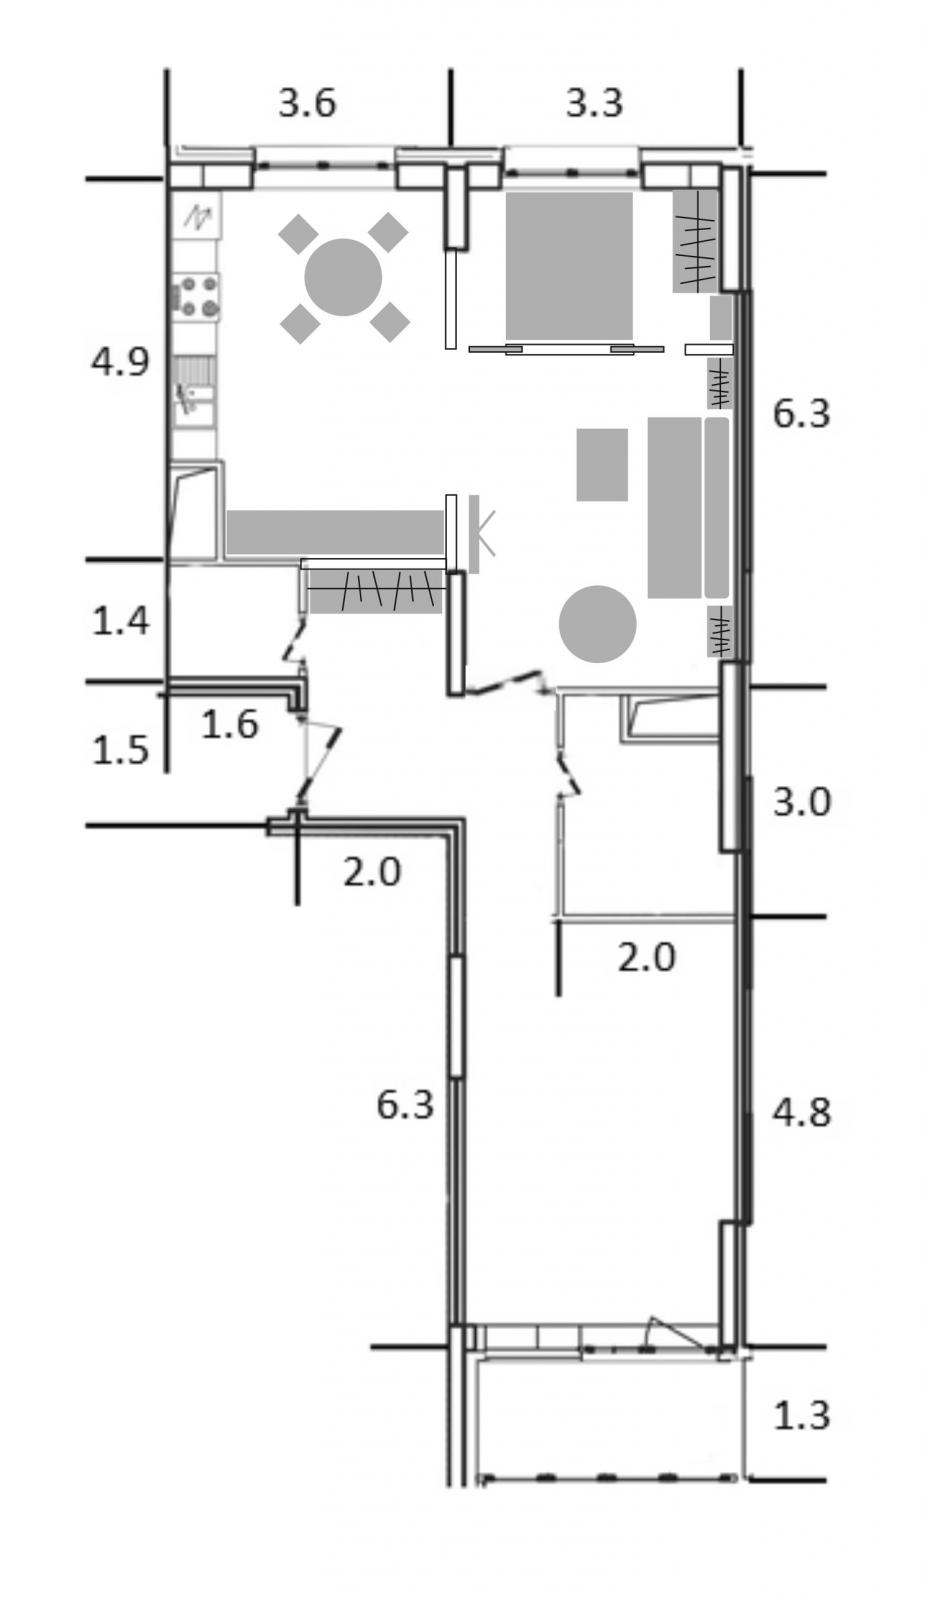 Перепланировка 2 комнатной квартиры в хрущевке трамвайчик